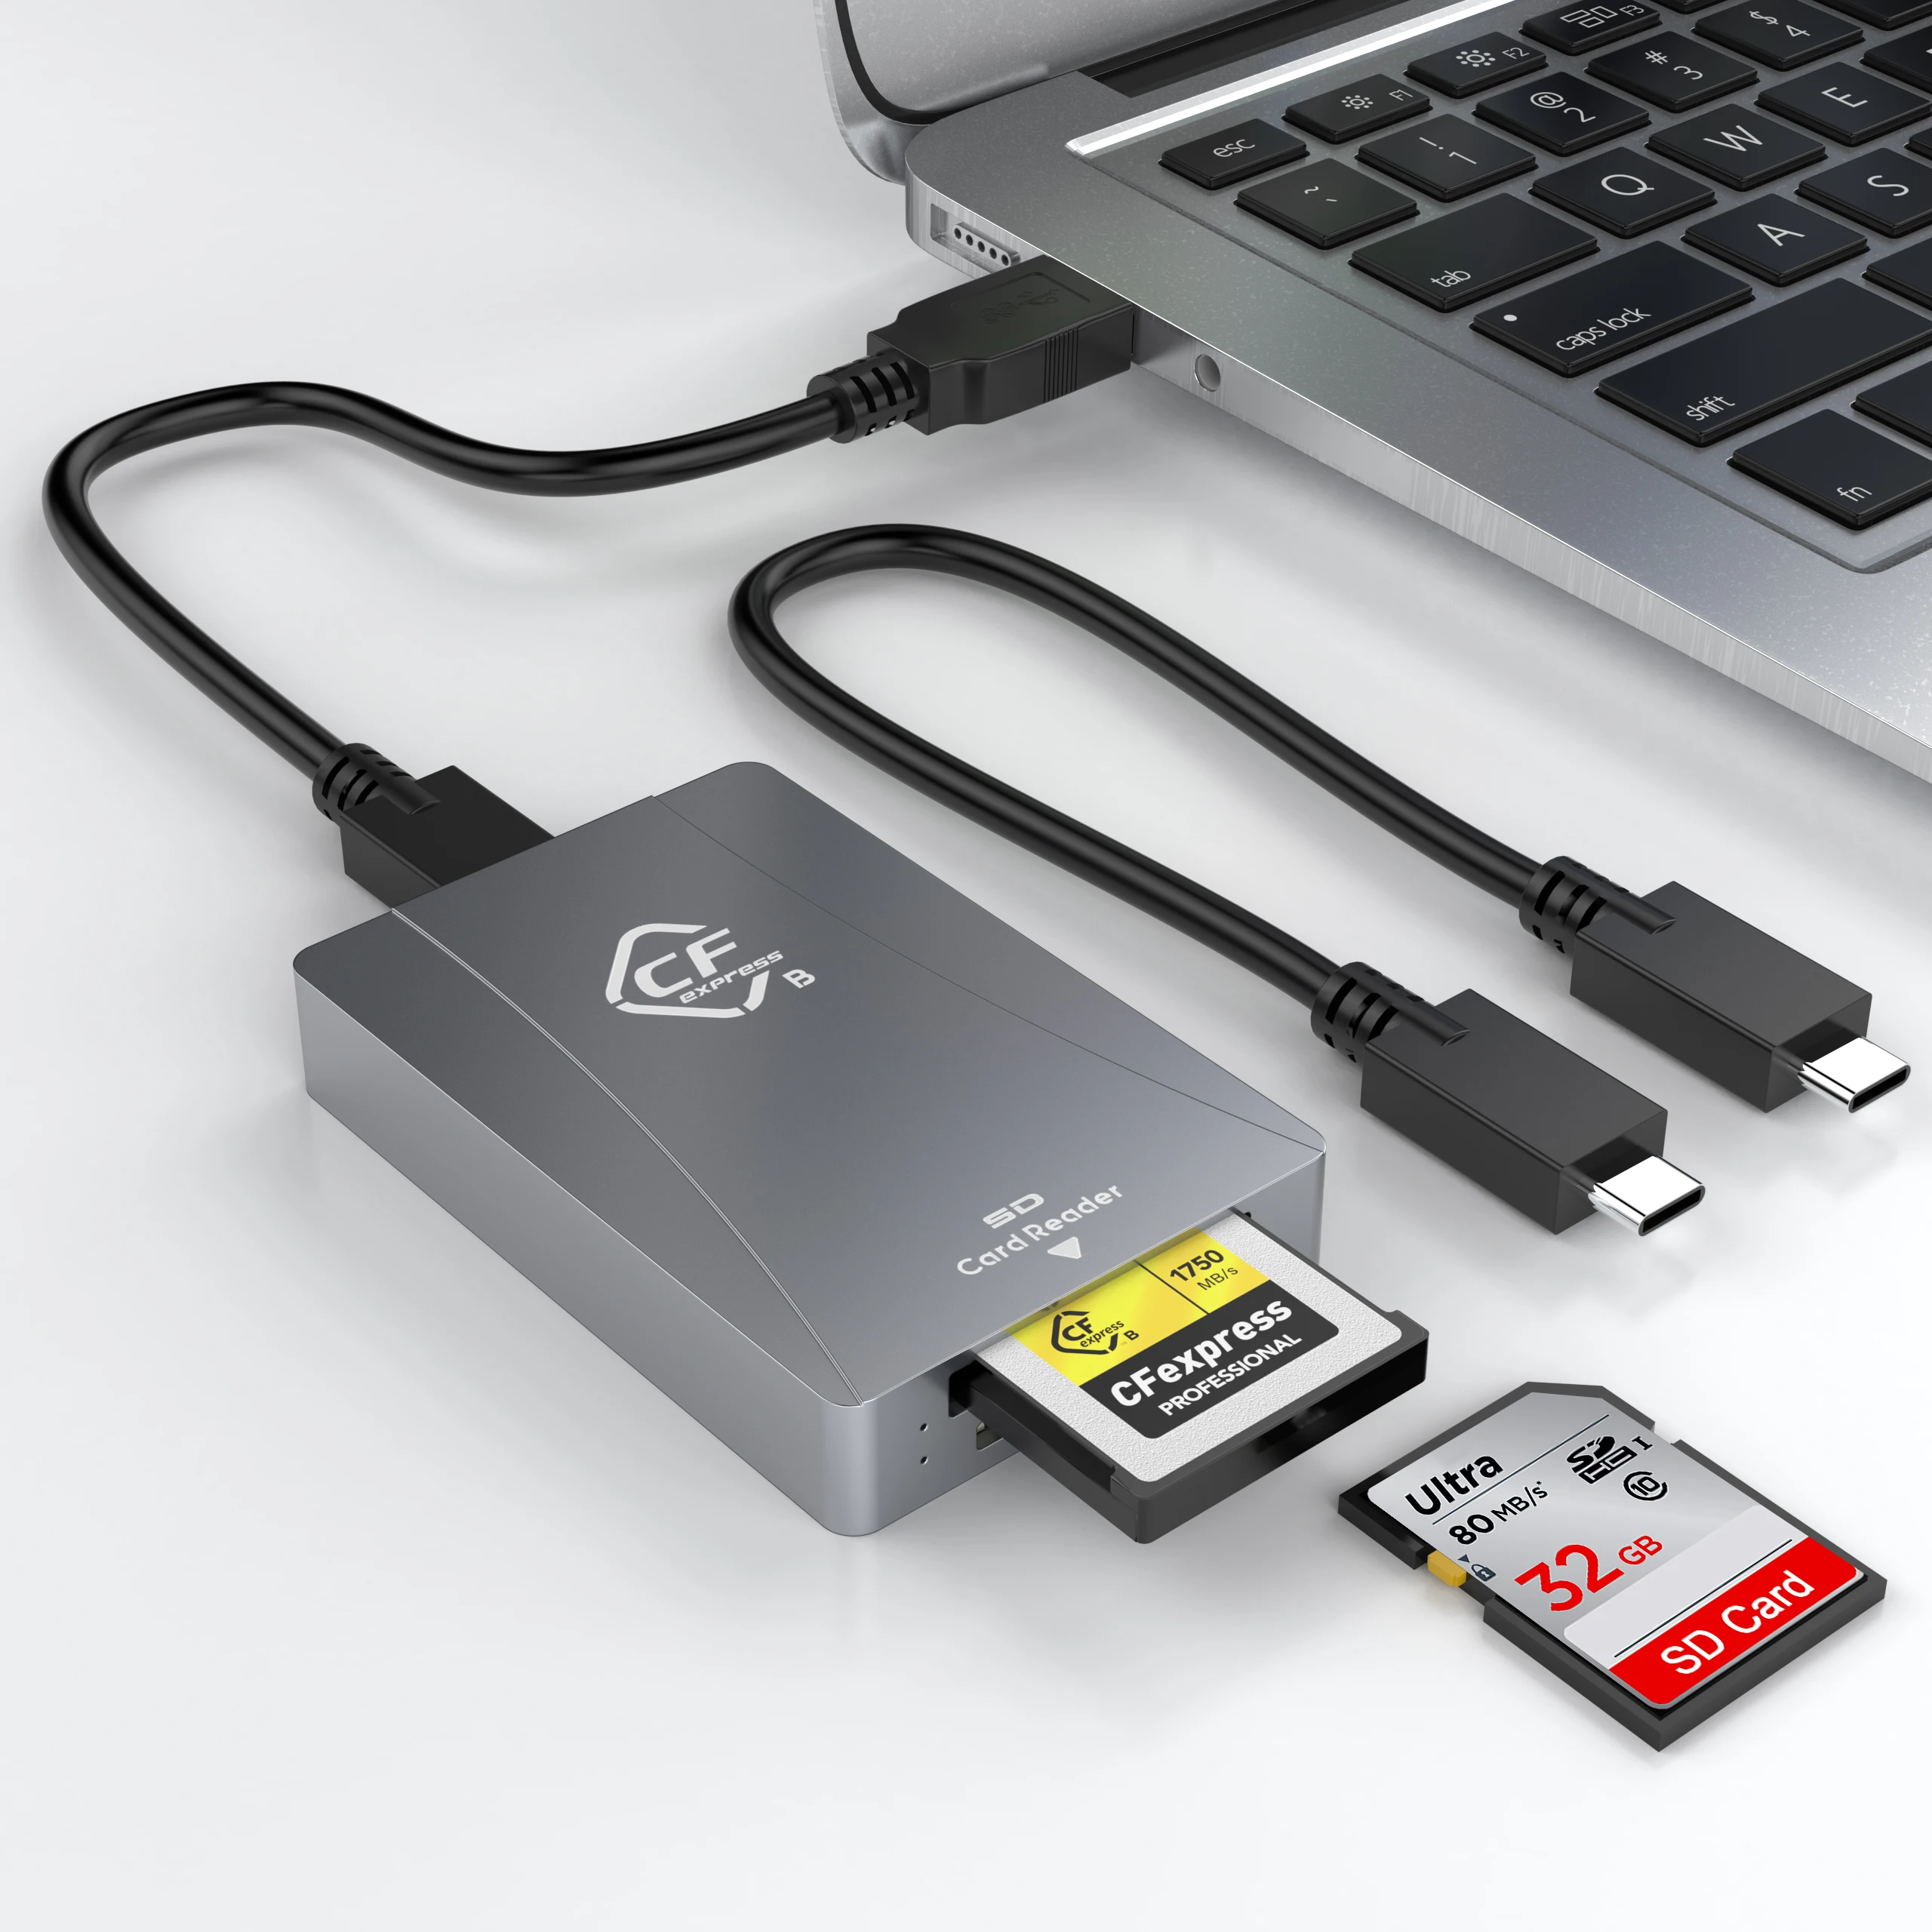 

Aluminum CFexpress Memory Card Adapter Thunderbolt 3 Port Connection CFexpress Type B Reader USB 3.1 Gen 2 CFexpress Card Reader